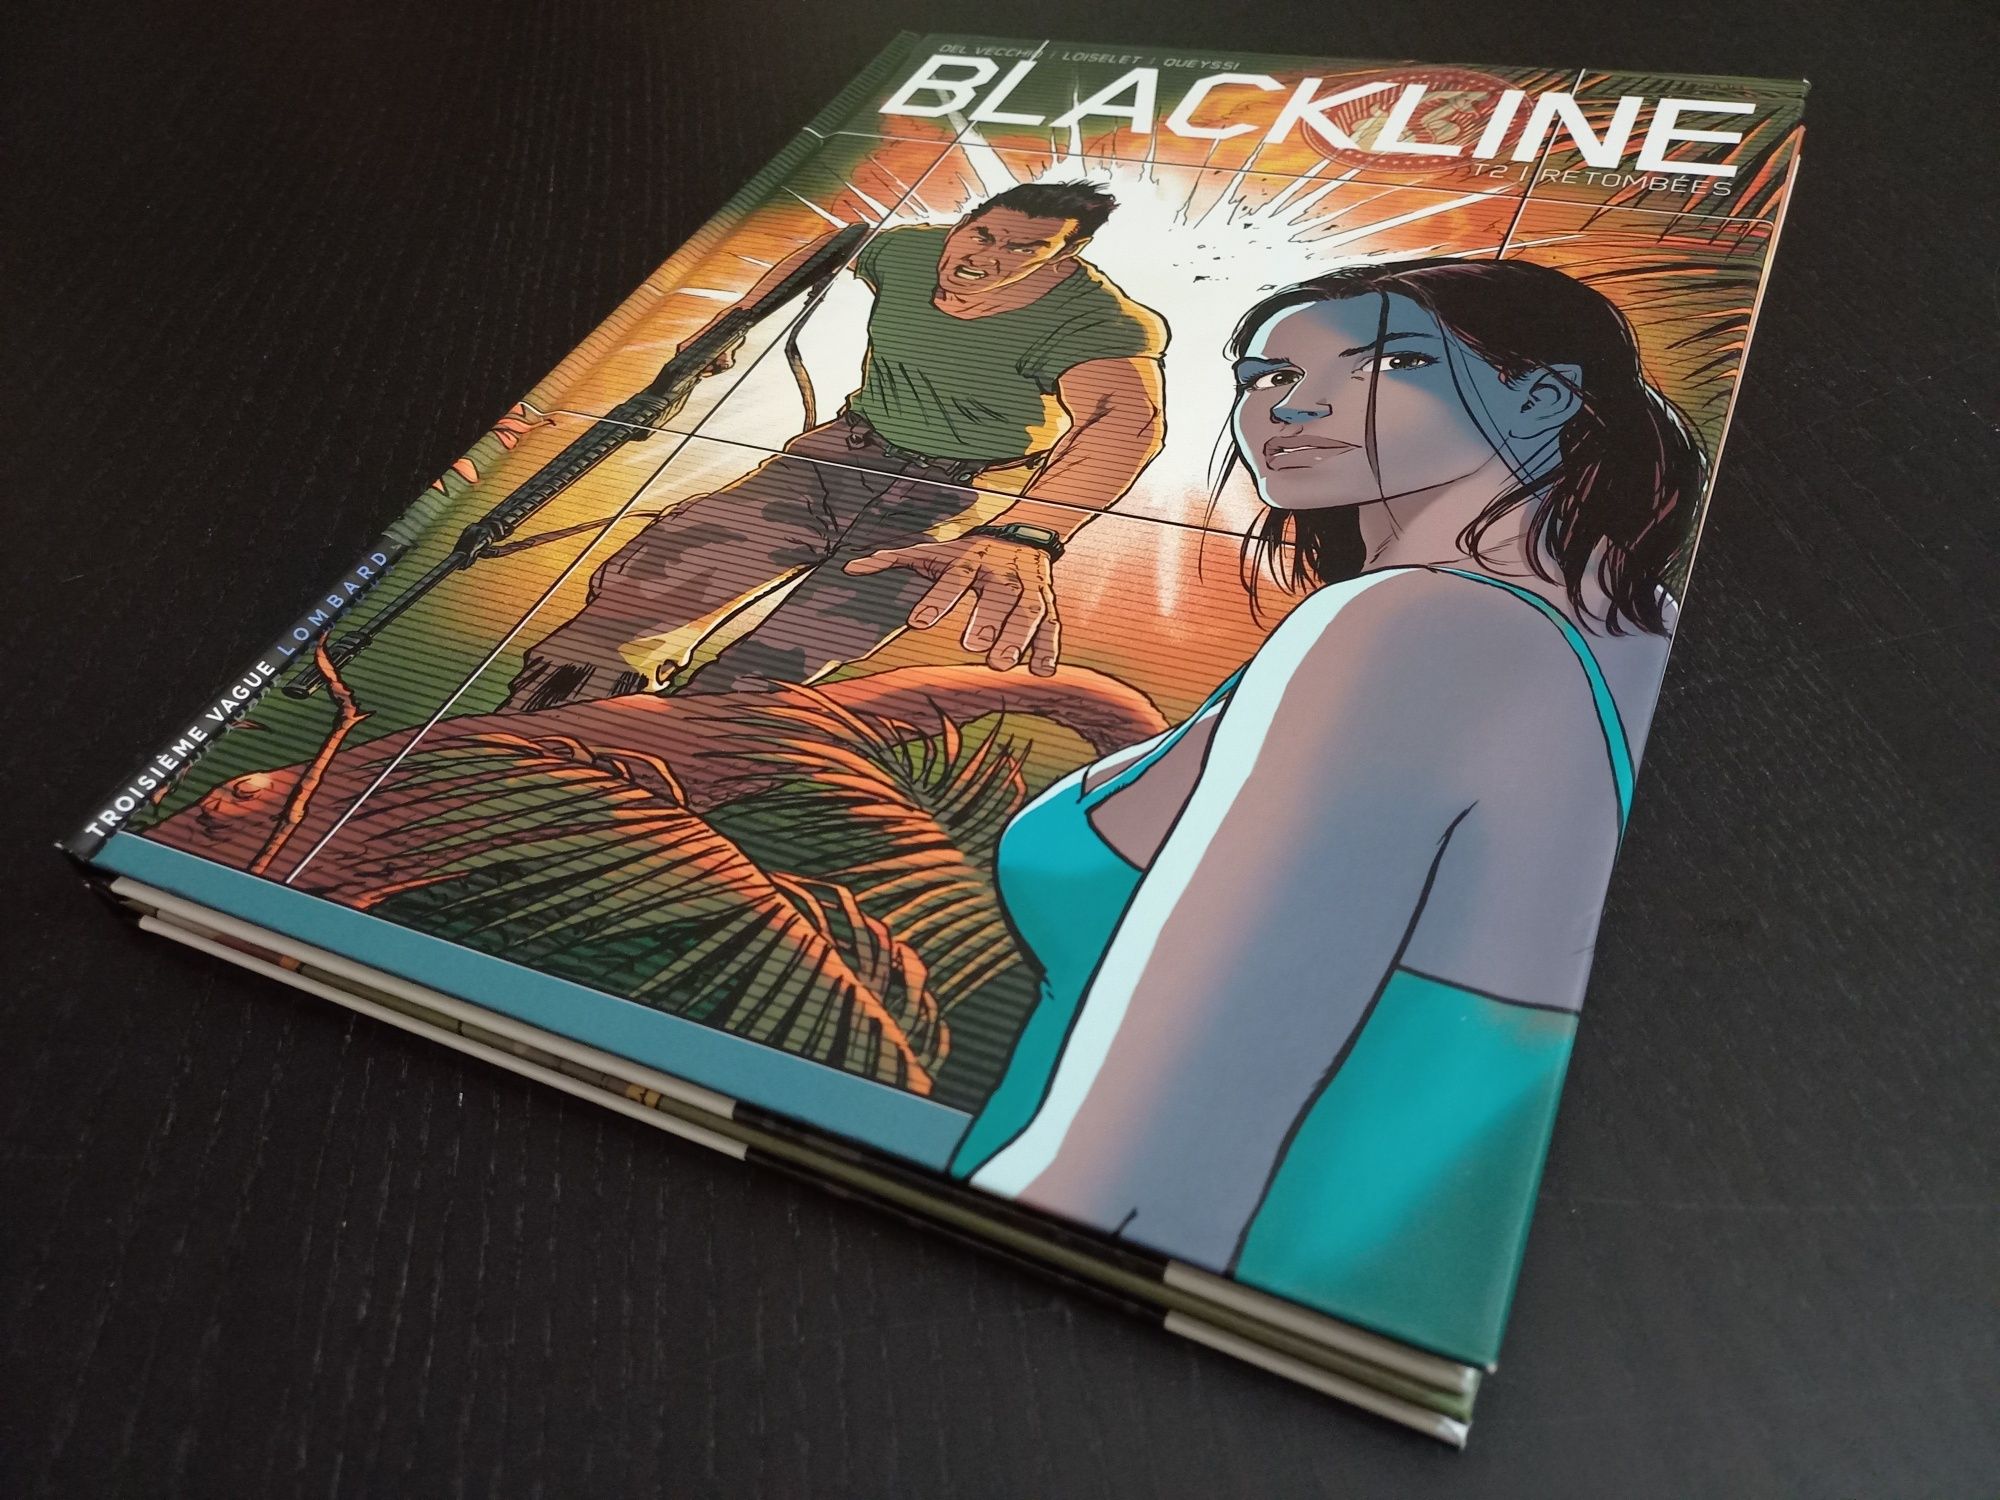 Blackline - 2 volumes